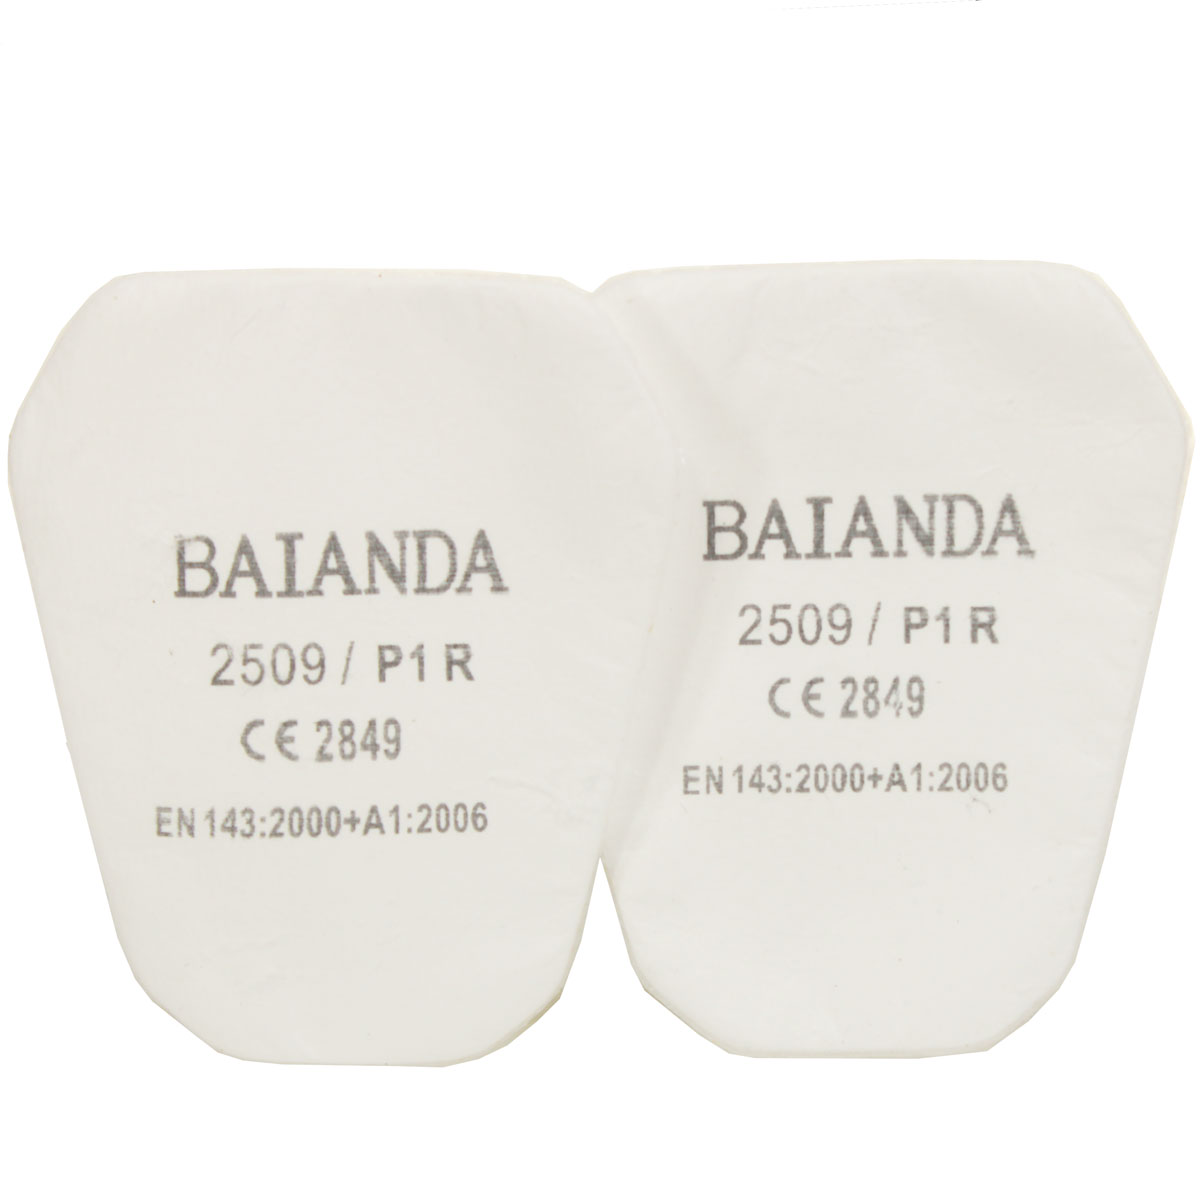 Комплект противоаэрозольных фильтров (предфильтров) BAIANDA 2509, класс P1R, 10 шт/уп комплект фильтров для clever tion